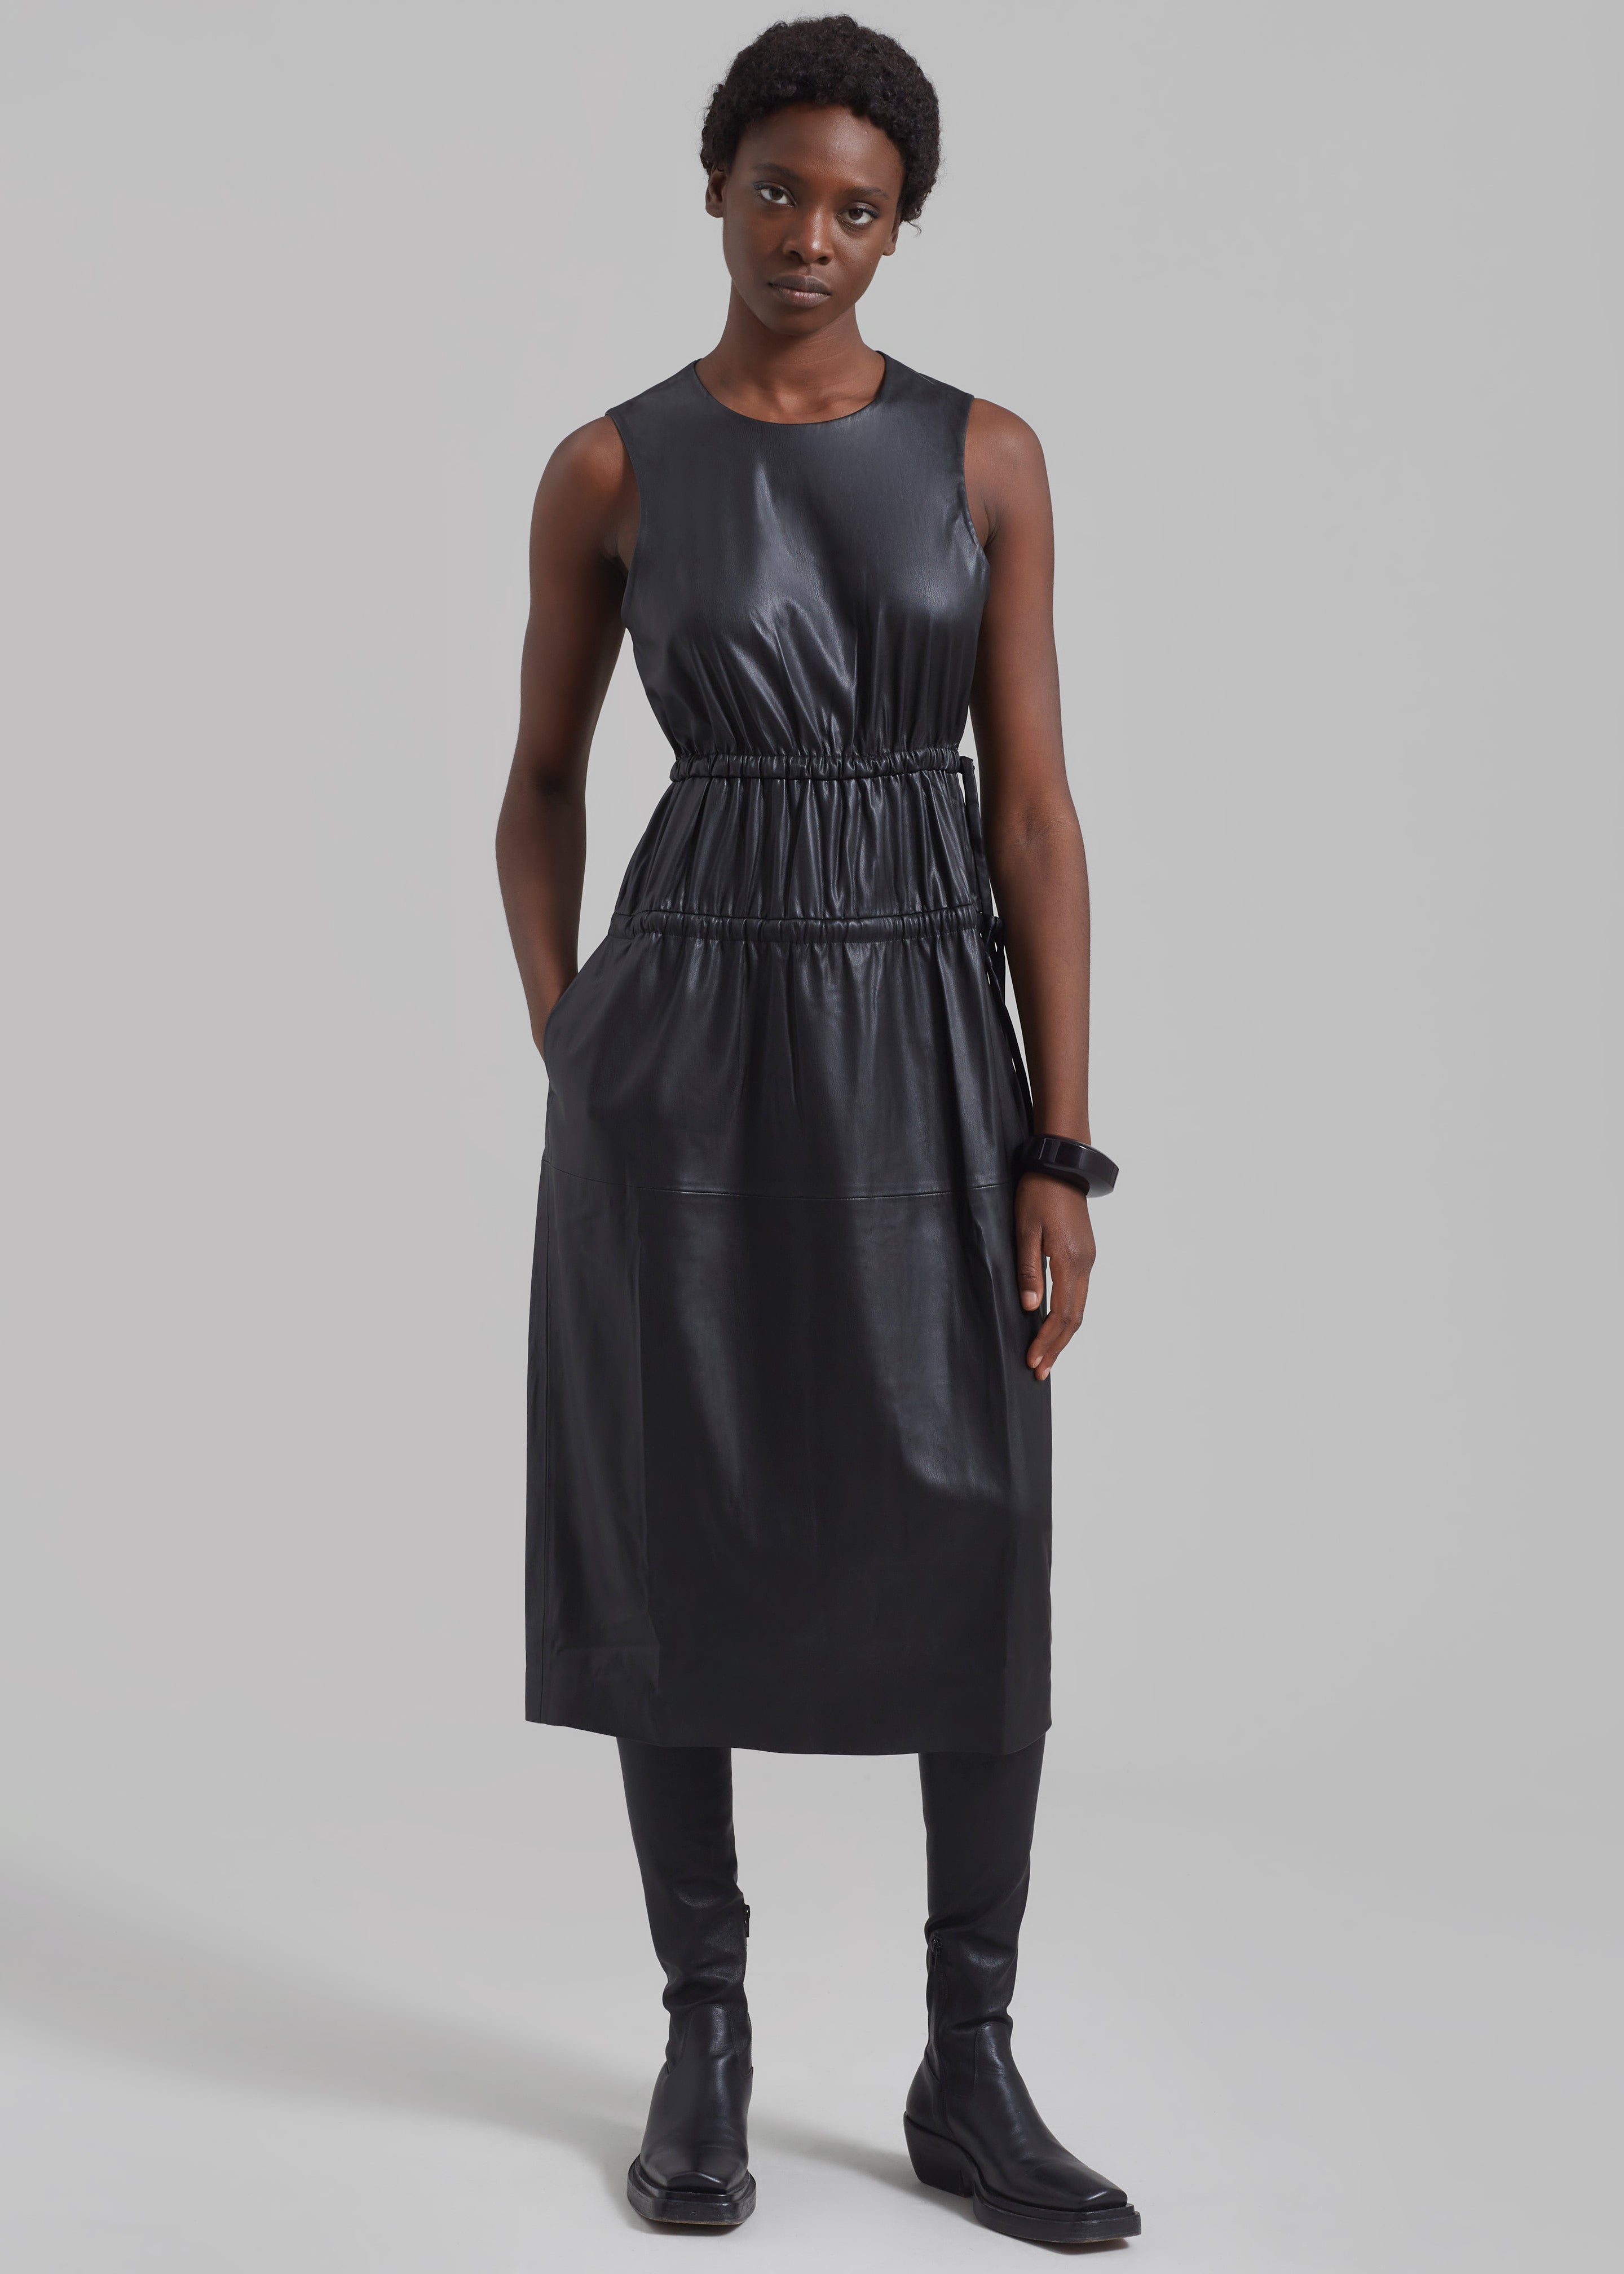 Proenza Schouler White Label Faux Leather Drawstring Dress - Black - 1